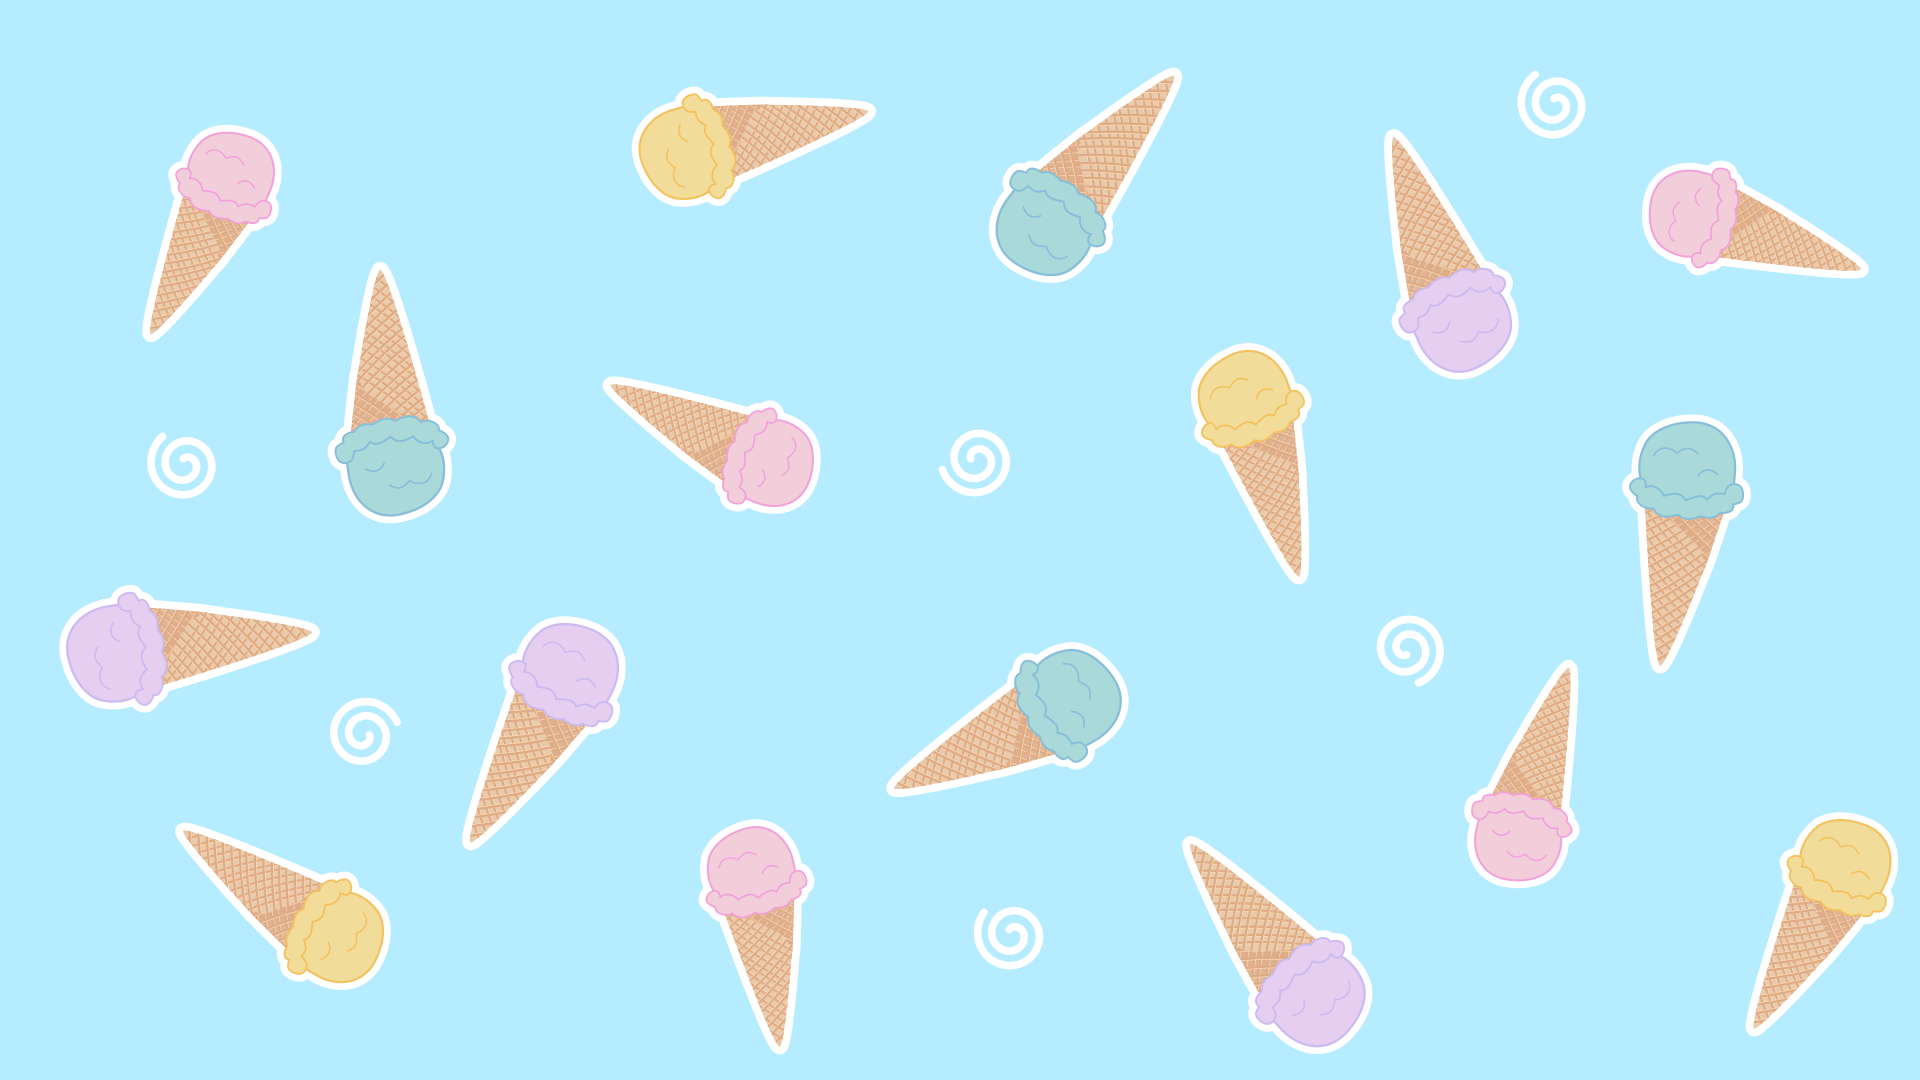 Ice cream background